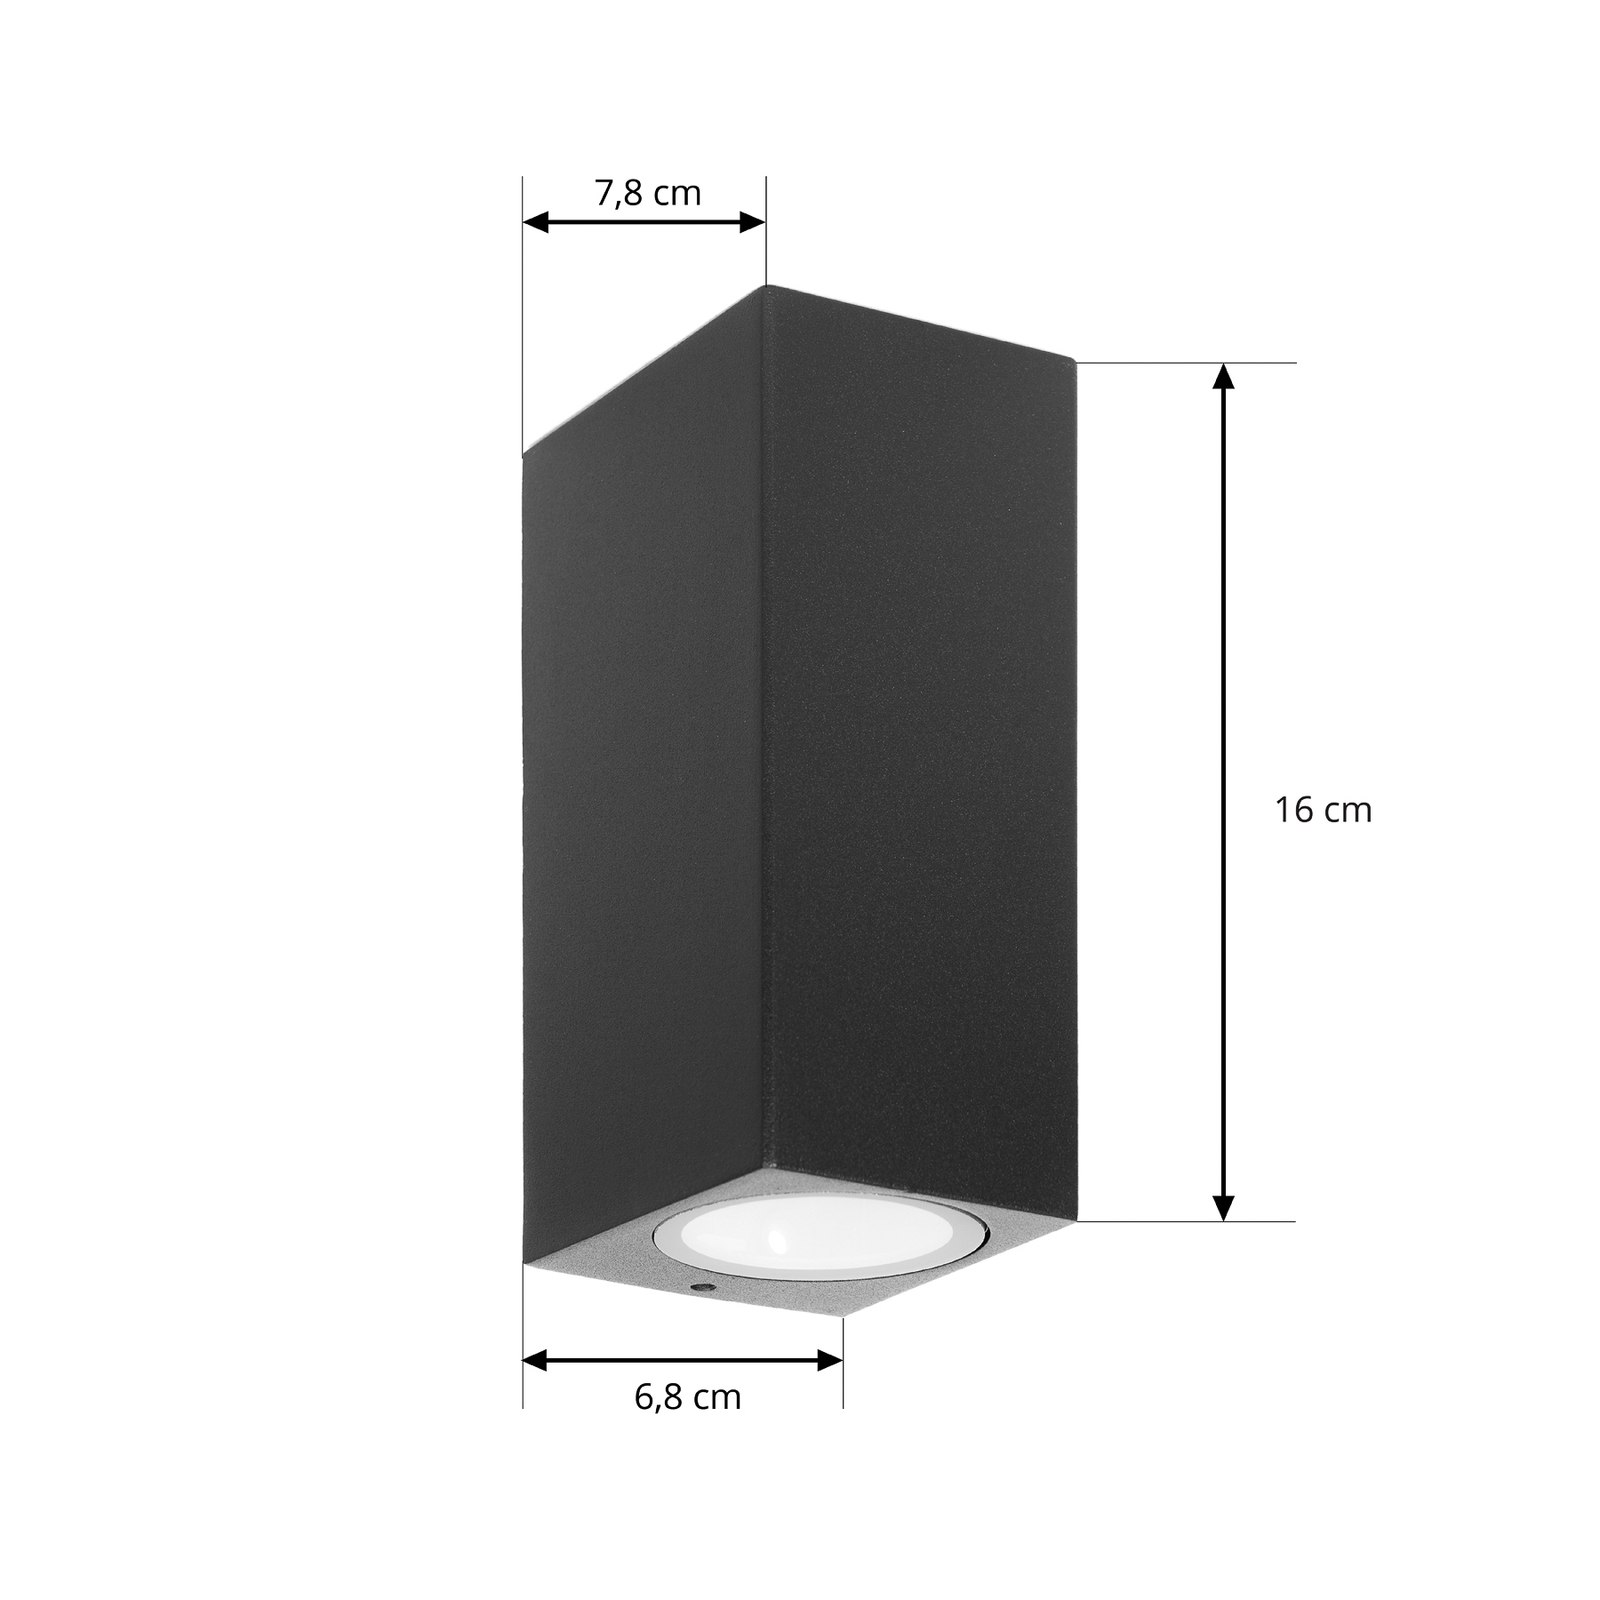 Prios Außenwandleuchte Tetje, schwarz, eckig, 16 cm, 4er-Set